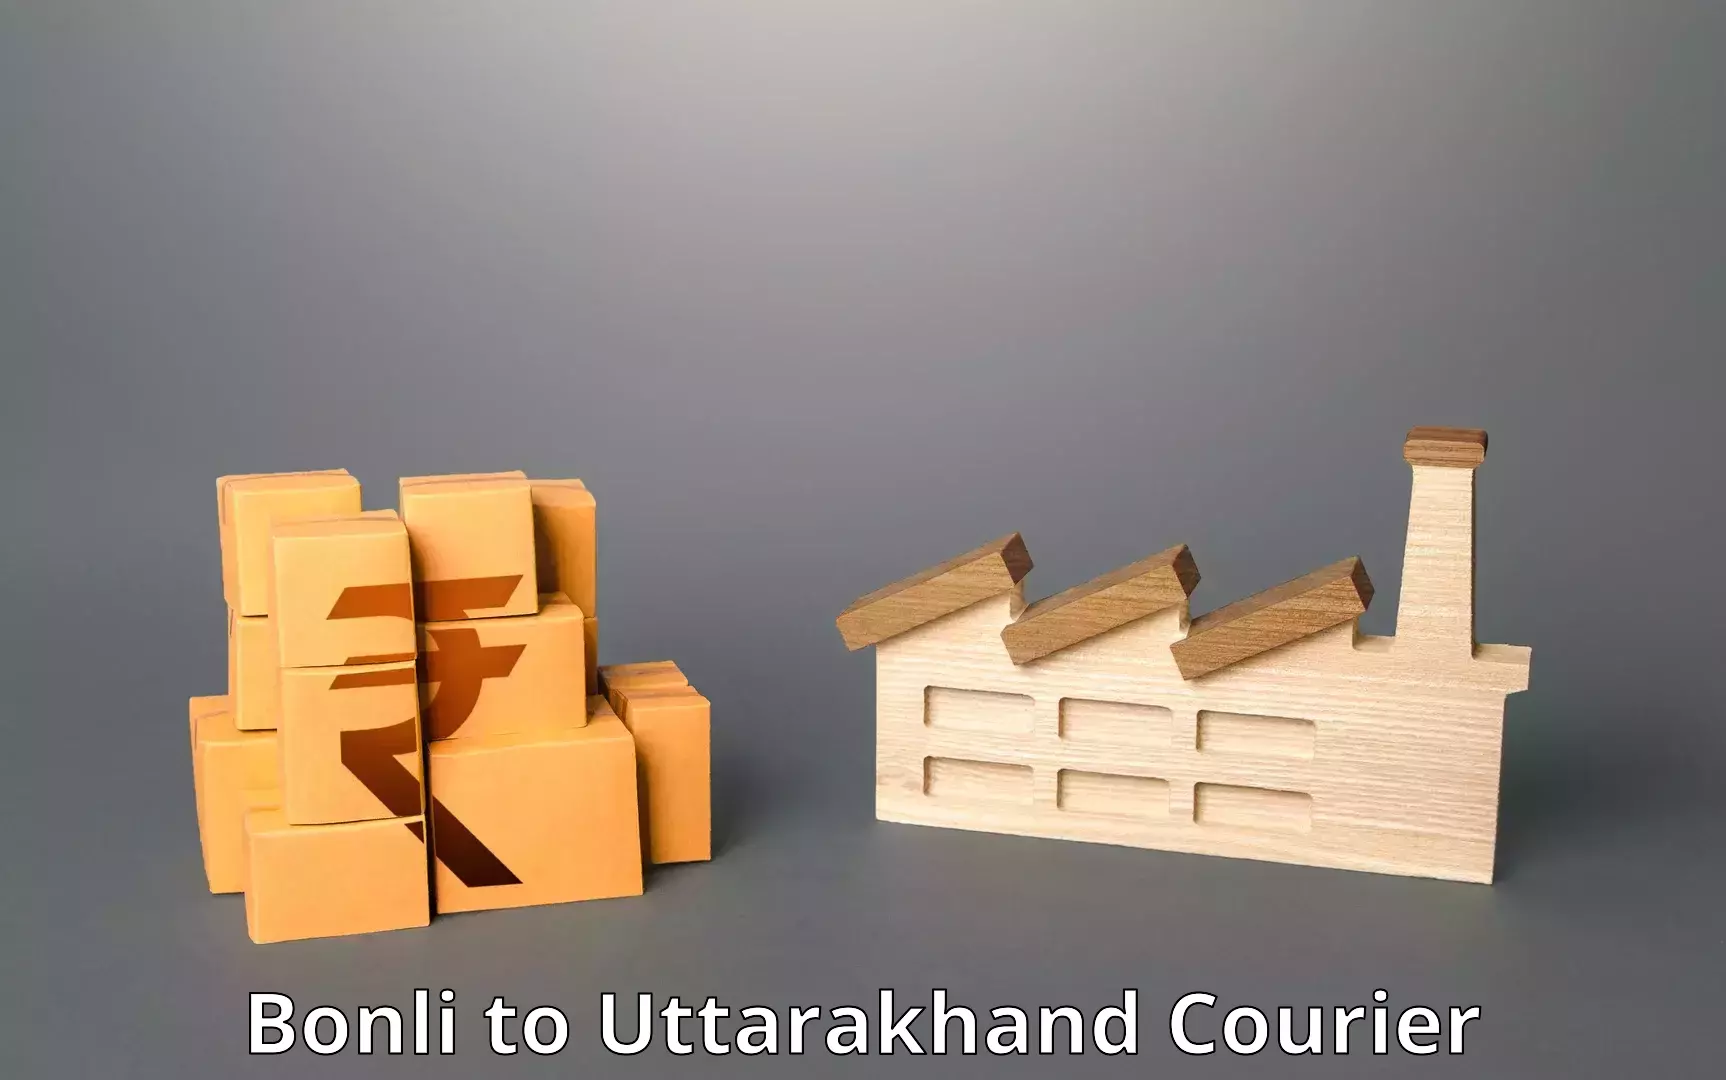 Ground shipping Bonli to Uttarakhand